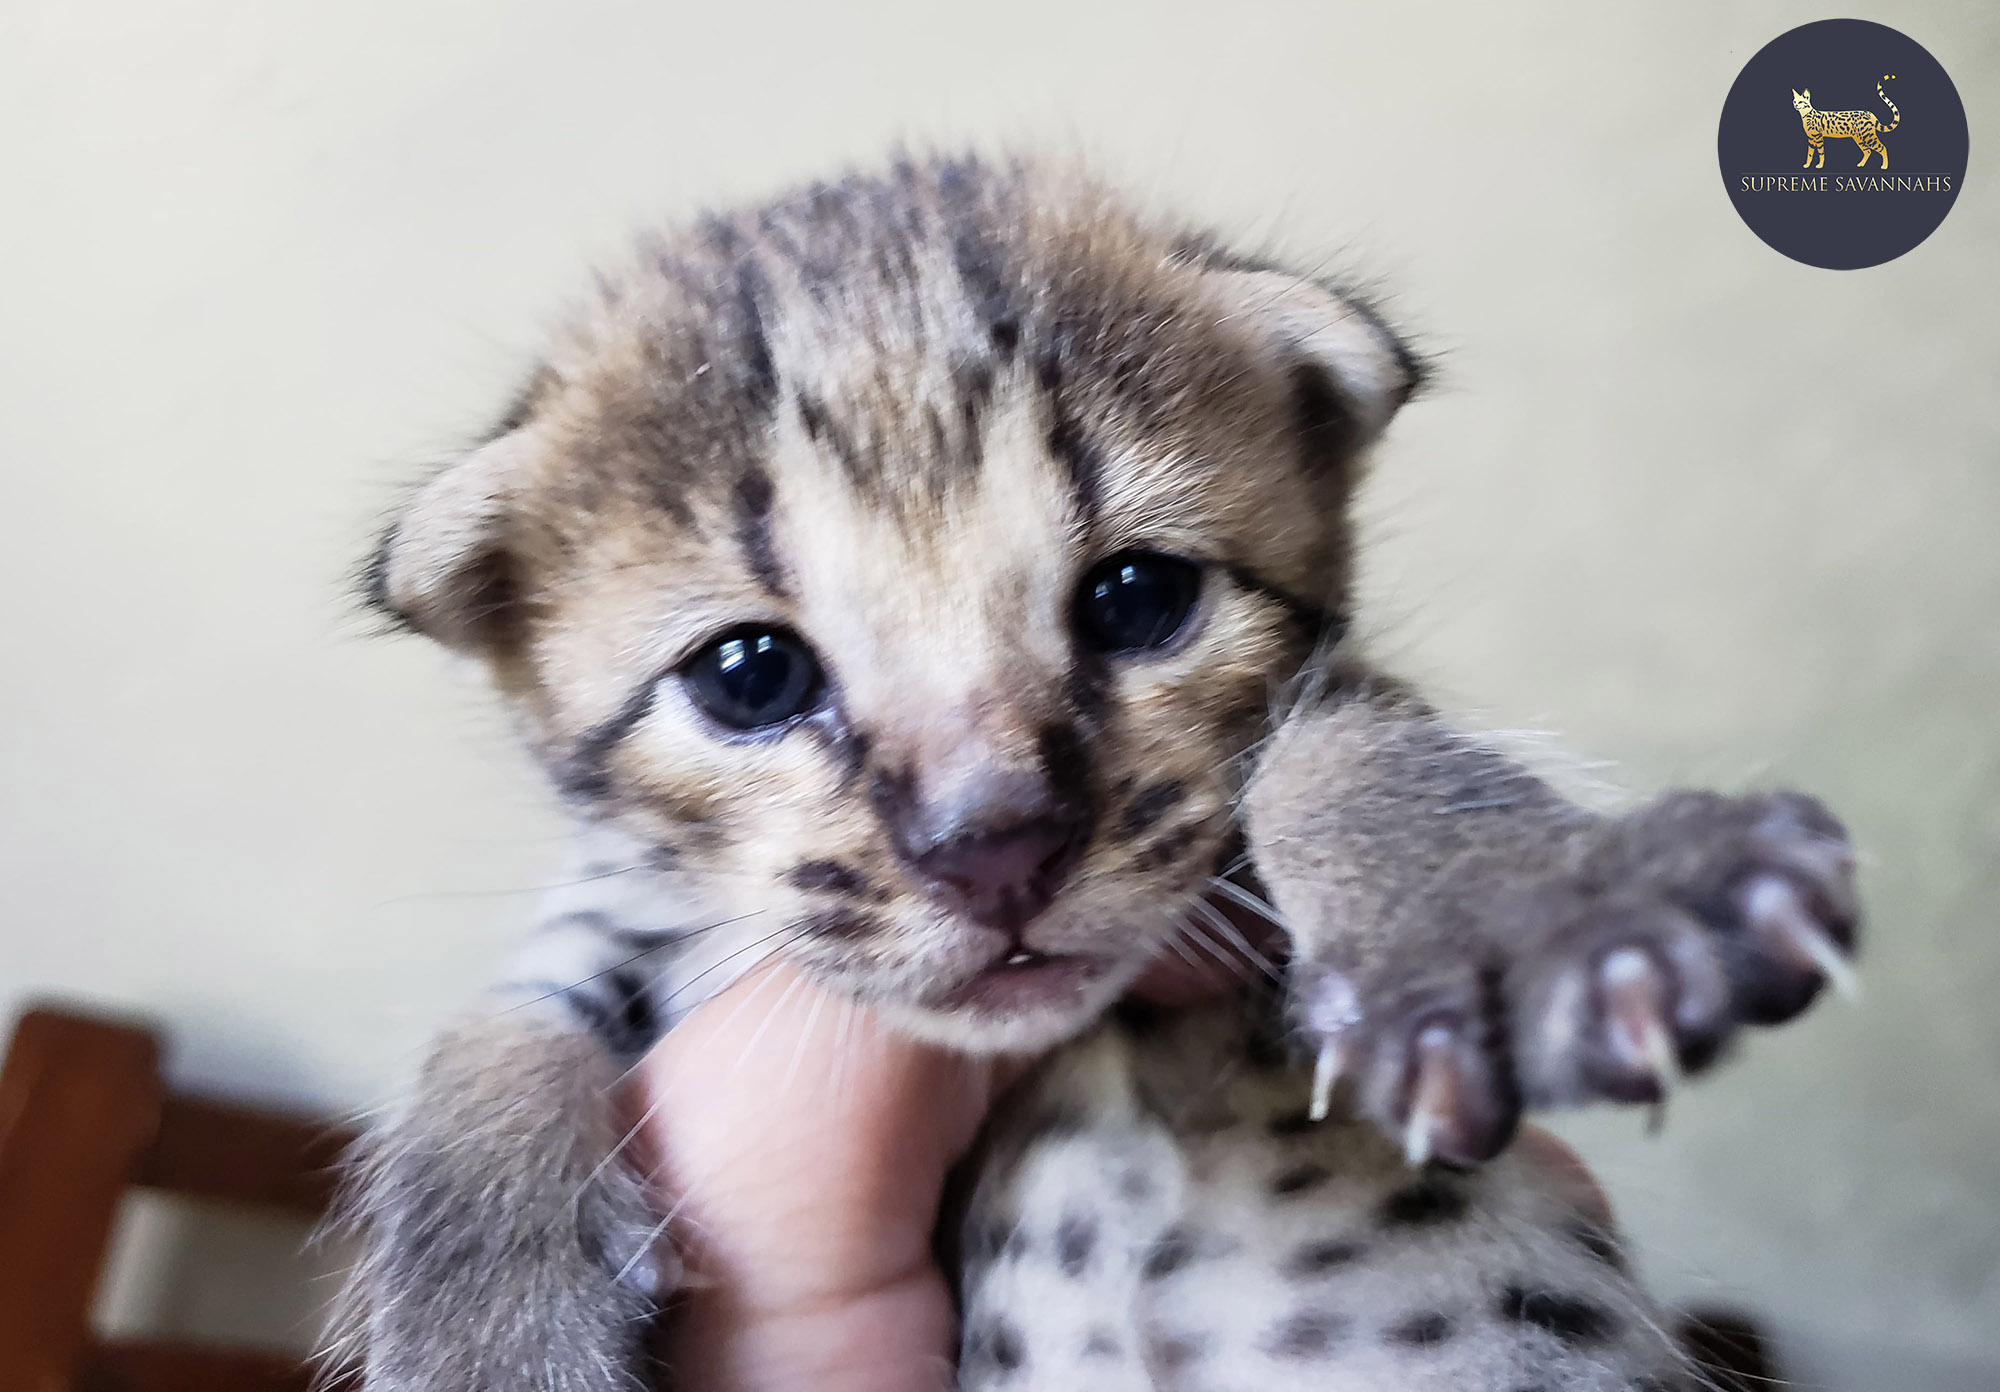 F2 Savannah kitten serval ontario canada f1 f3 f4 f5 f6 sbt